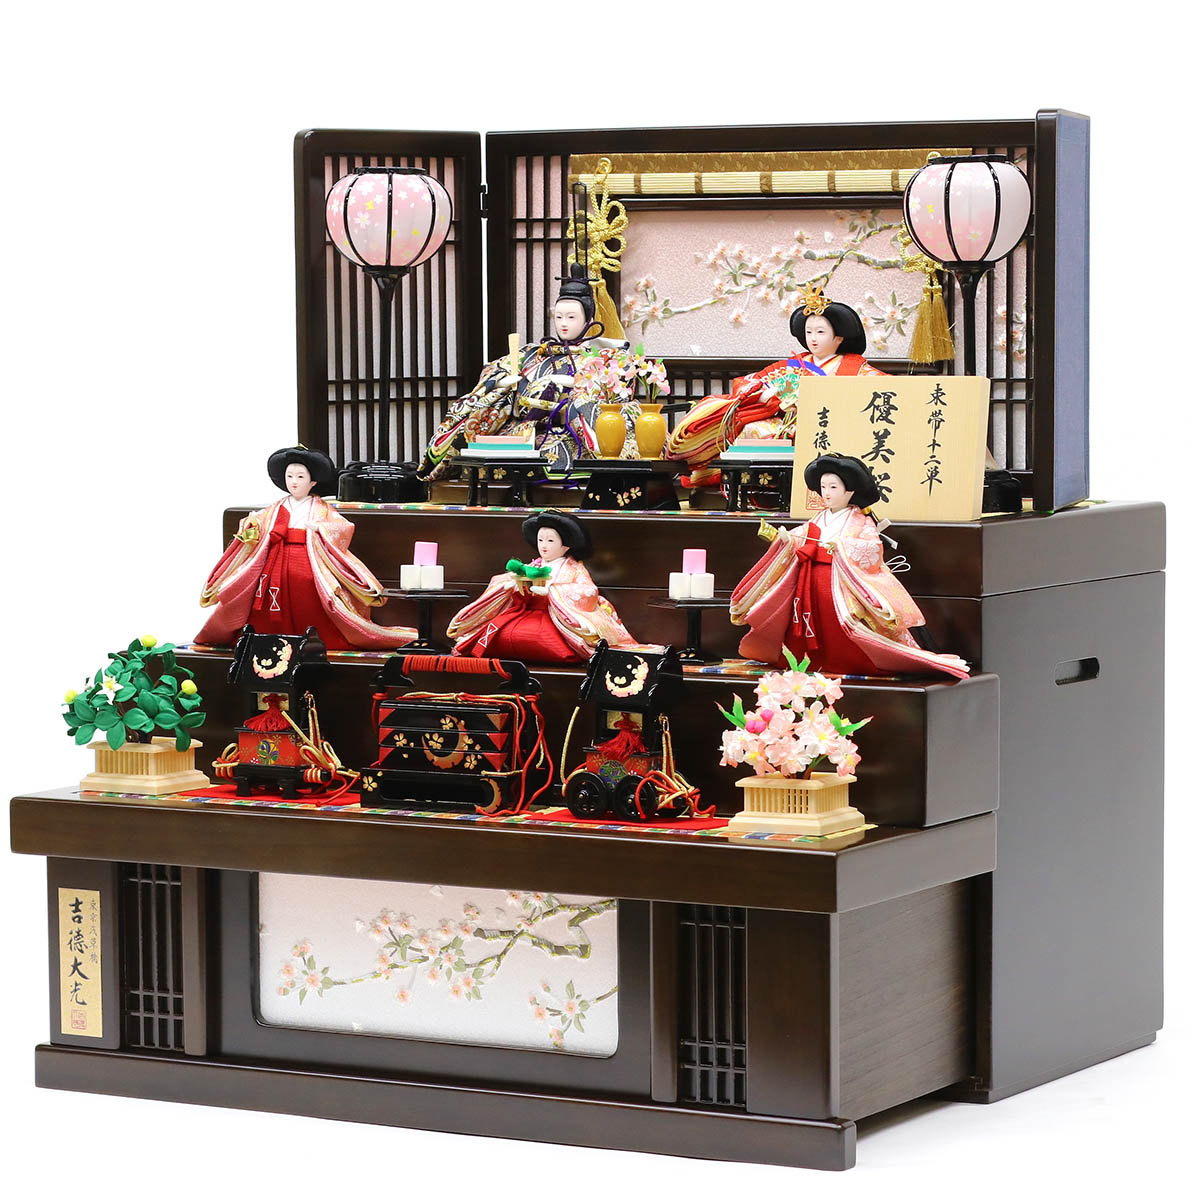 【楽天市場】雛人形 吉徳 吉徳大光 コンパクト 三段収納飾り 芥子